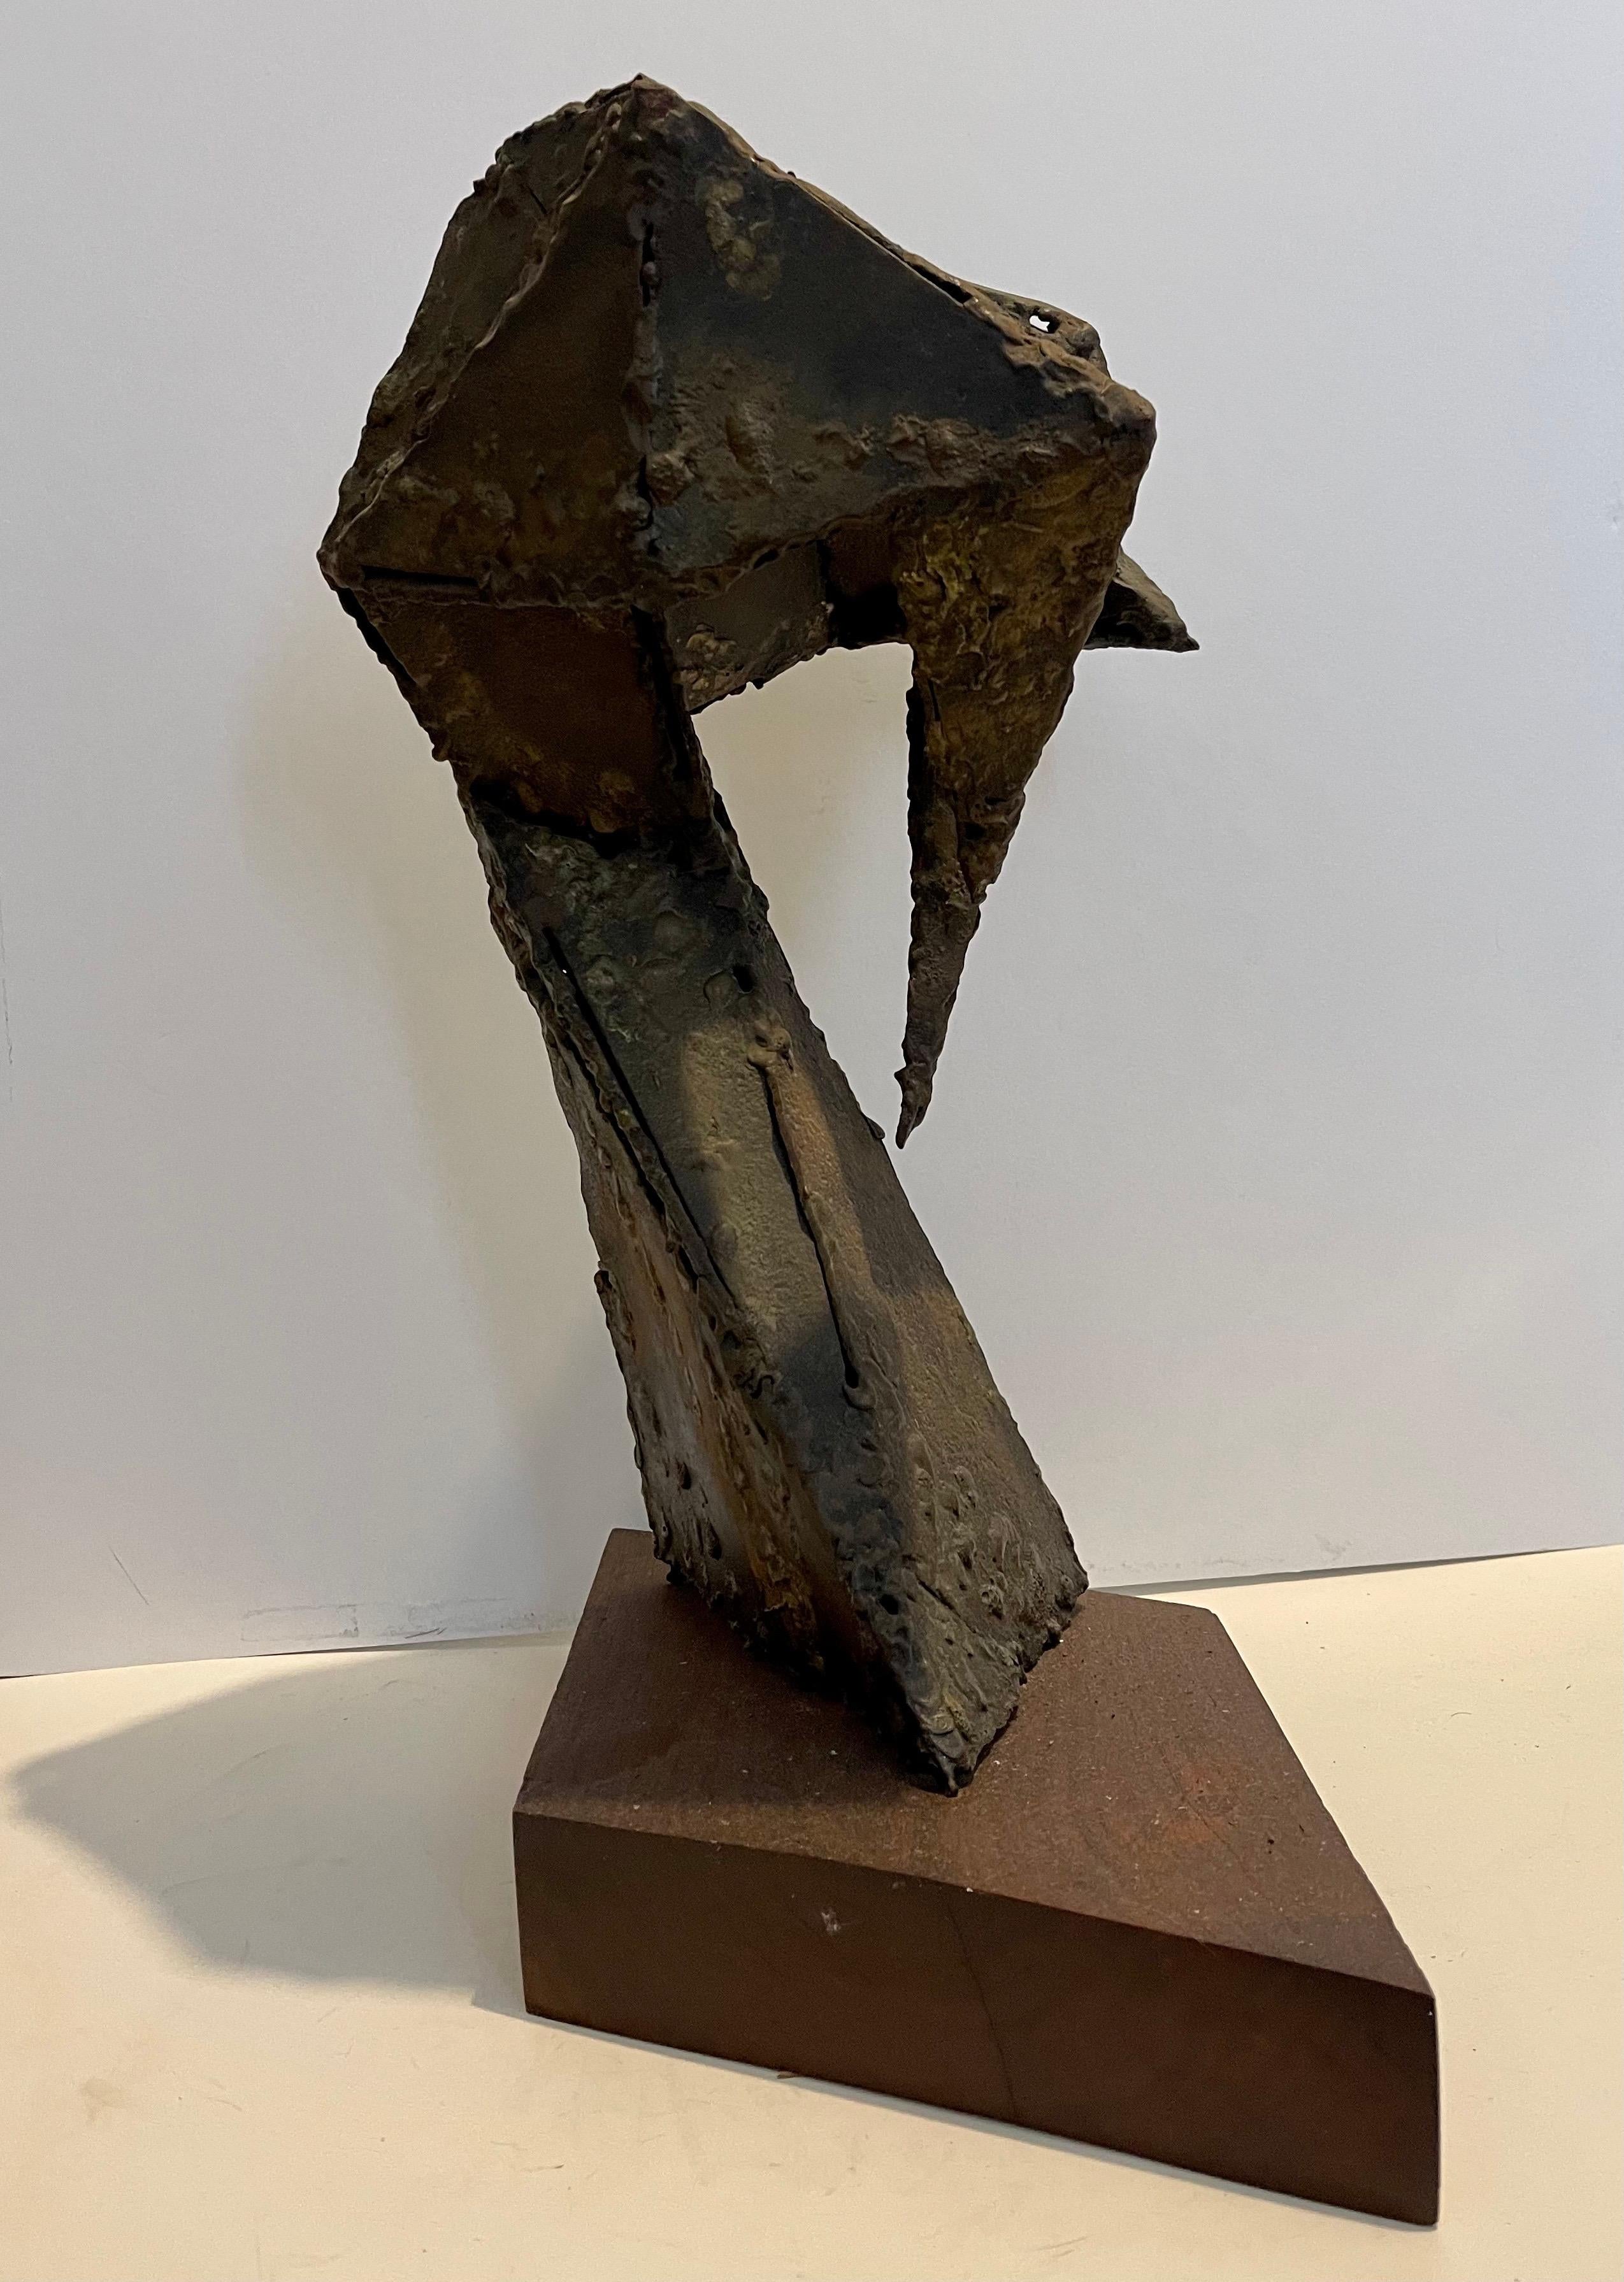 Abstrakt-expressionistische biomorphe geschweißte Metallskulptur, Abstrakt-expressionistische  (Abstrakter Expressionismus), Sculpture, von Seymour Lipton